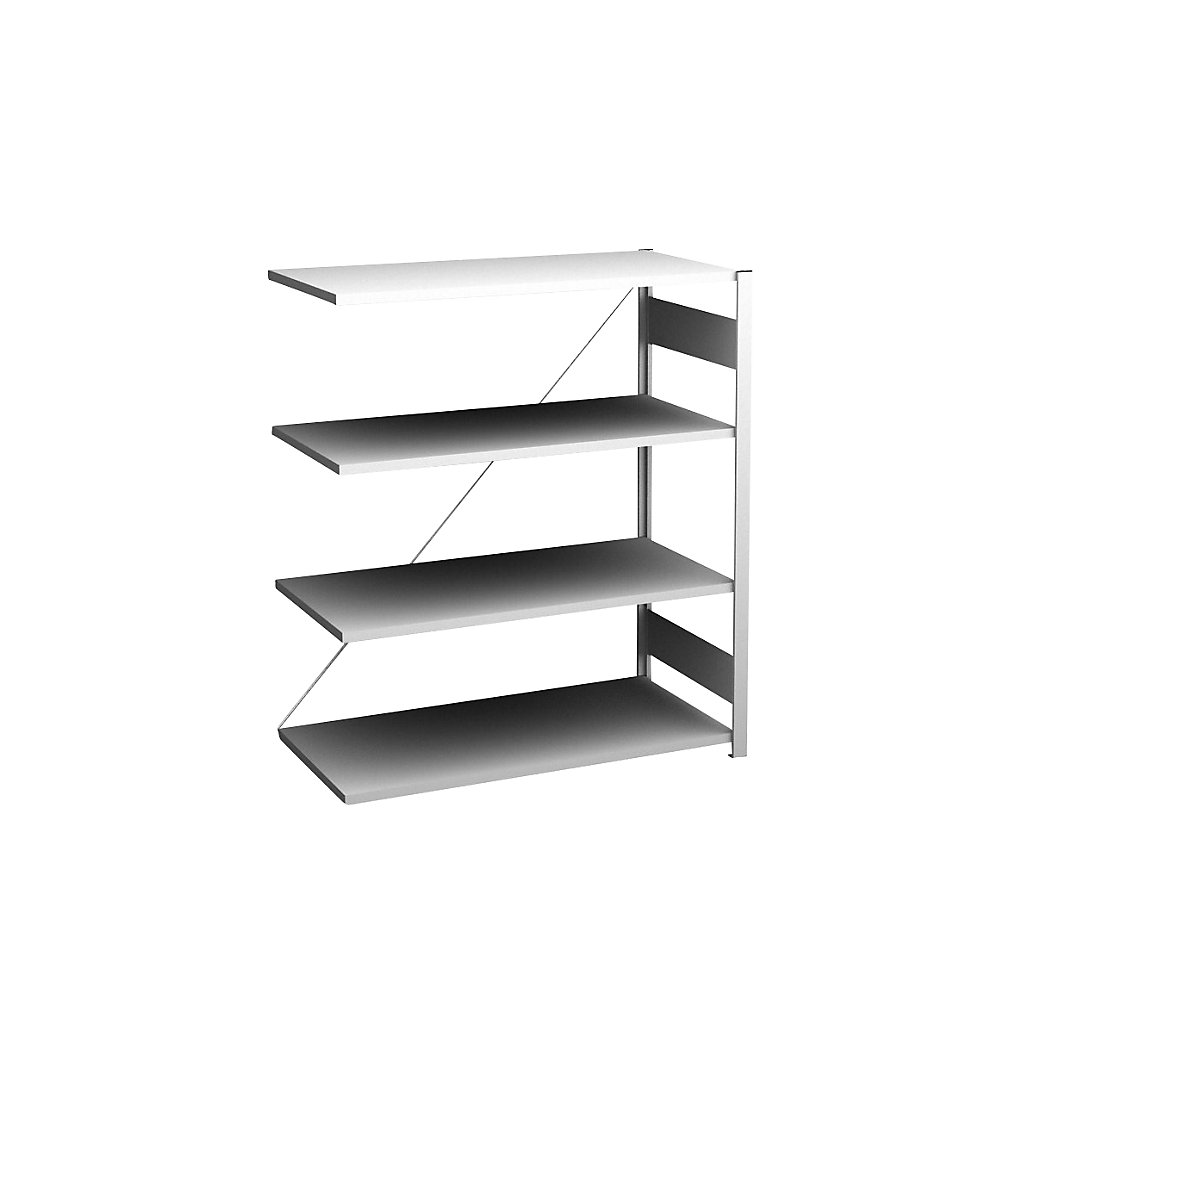 Sideboard shelving unit, light grey – hofe, height 1200 mm, 4 shelves, extension shelf unit, shelf depth 500 mm, max. shelf load 140 kg-9